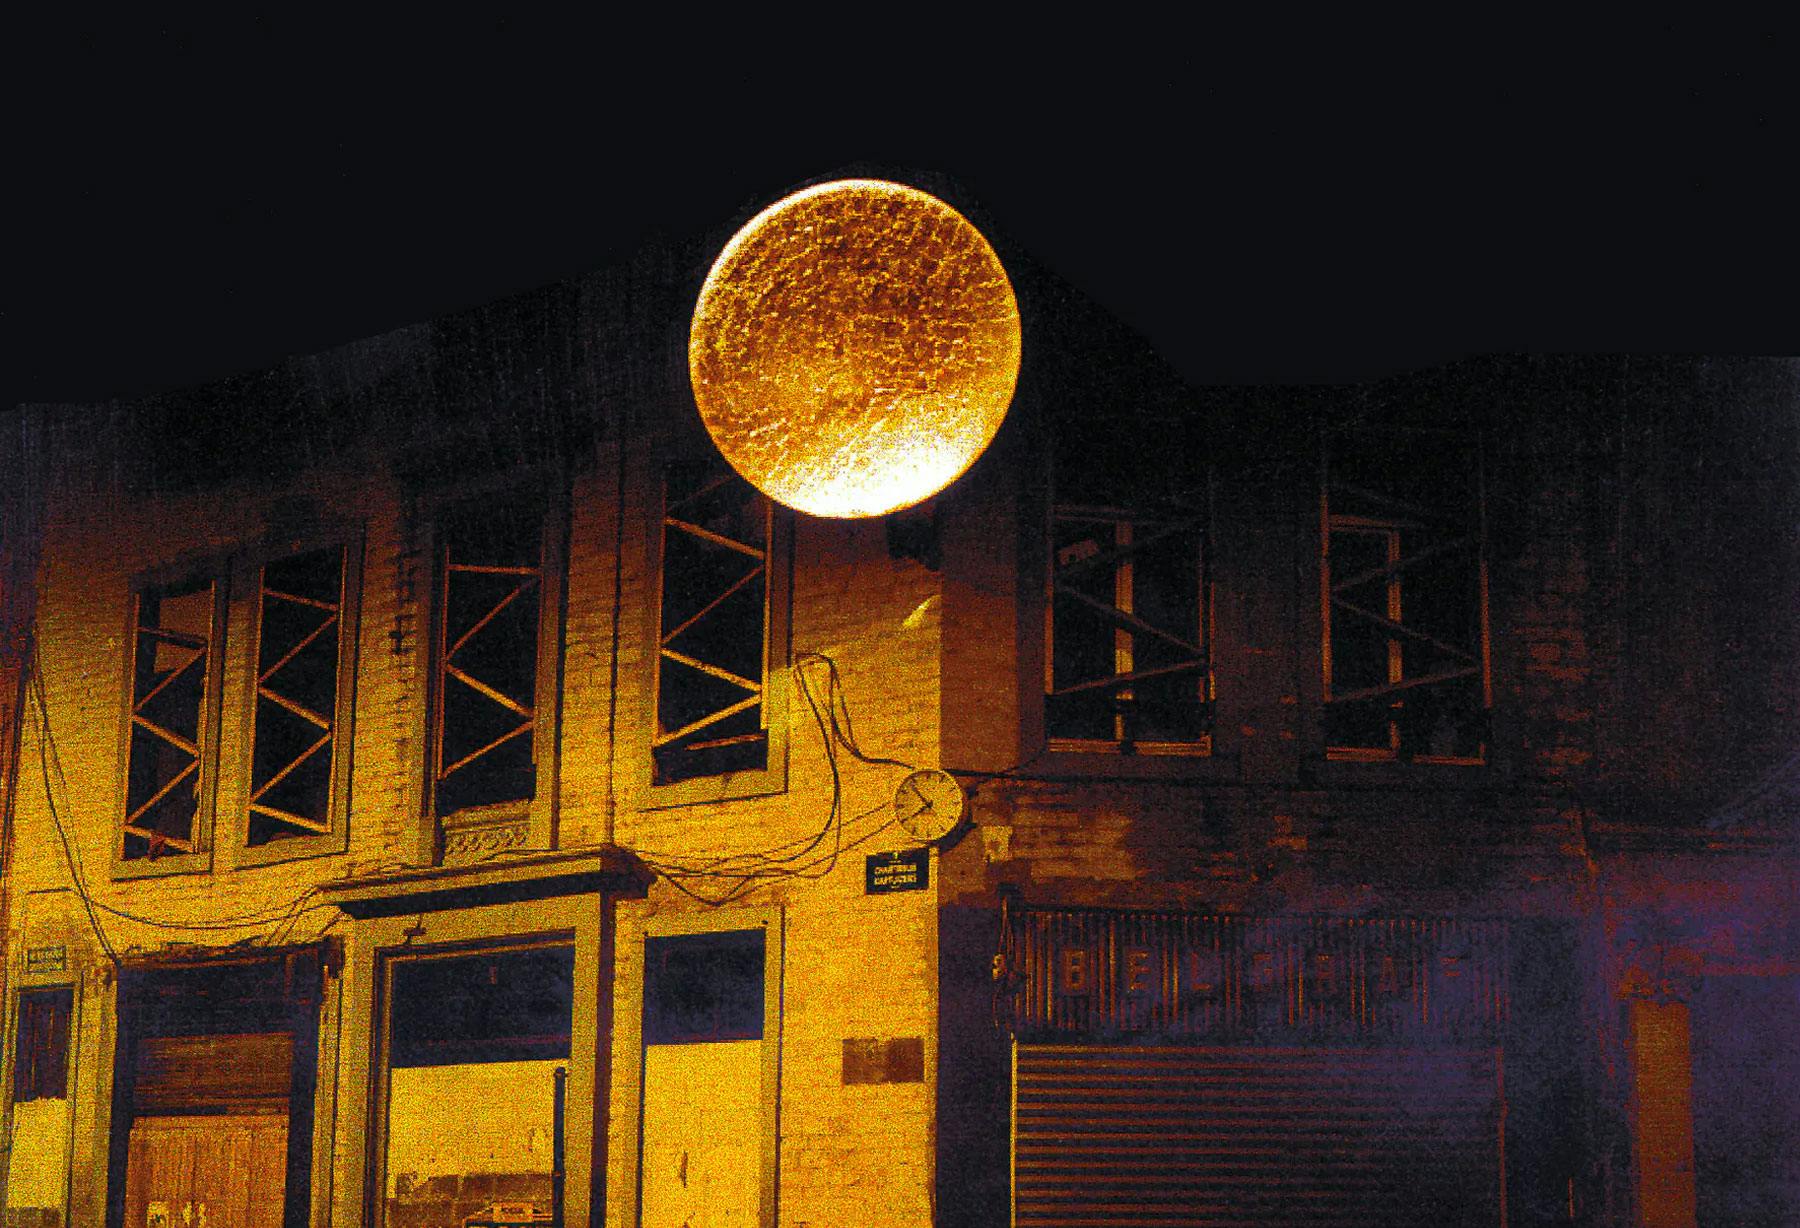 <p>A Bruxelles, in Rue des Chartreux, viene allestita la prima “Luna Piena” gigante di 2,5 metri di diametro, rivestita in foglia color oro. Sempre a Bruxelles, viene installato un “Albero della Luce” a fibra ottica, di 5 metri di altezza e con 50 fasci di luce.</p>
